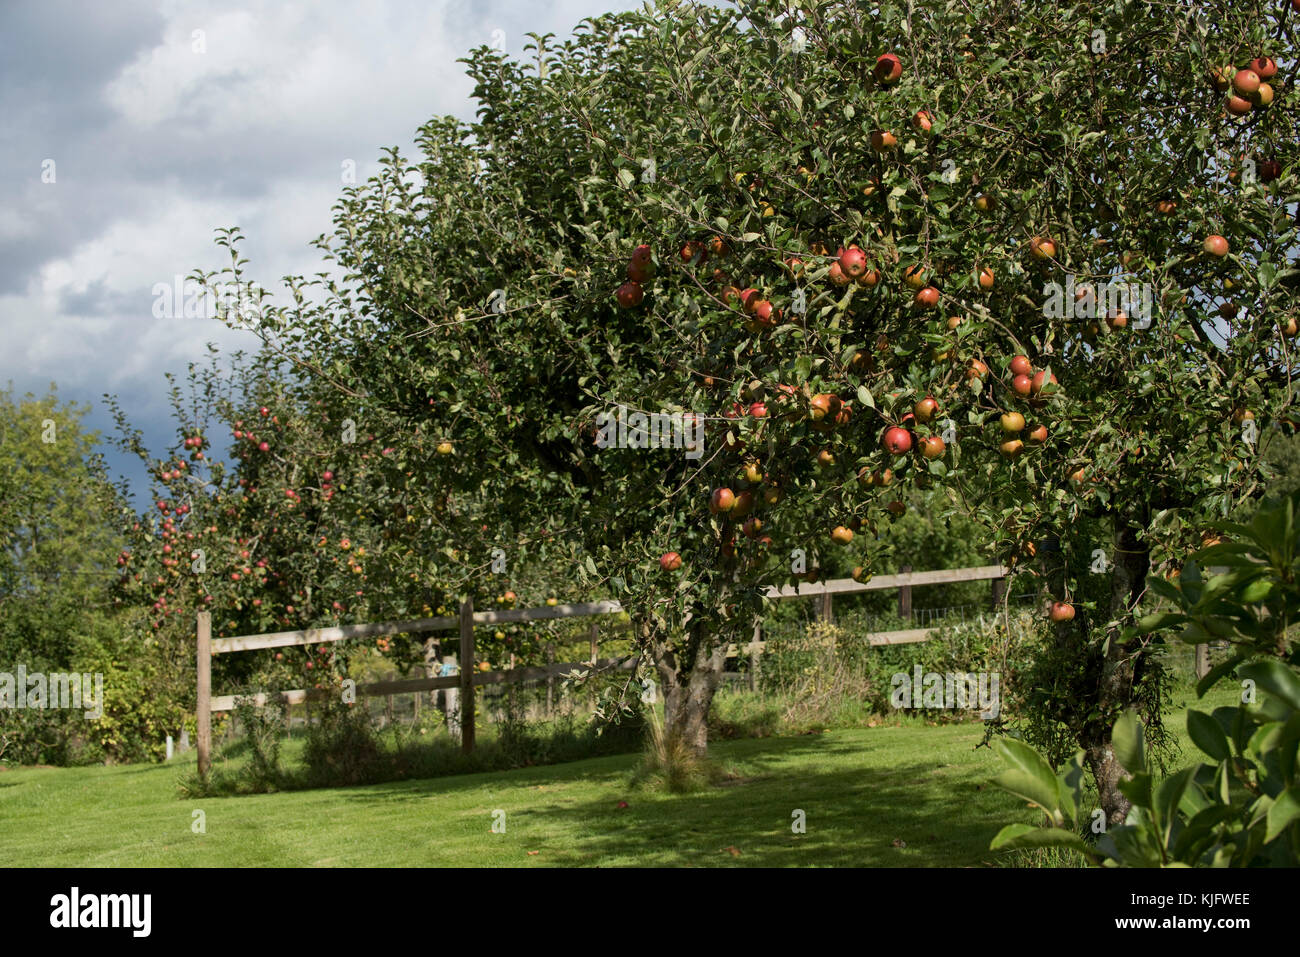 Reifen Bäume in einem einheimischen Garten Apfelgarten mit Reifen roten Früchten von cox's Orange pippin und anderen Bäumen in voller Frucht, Berkshire, September Stockfoto